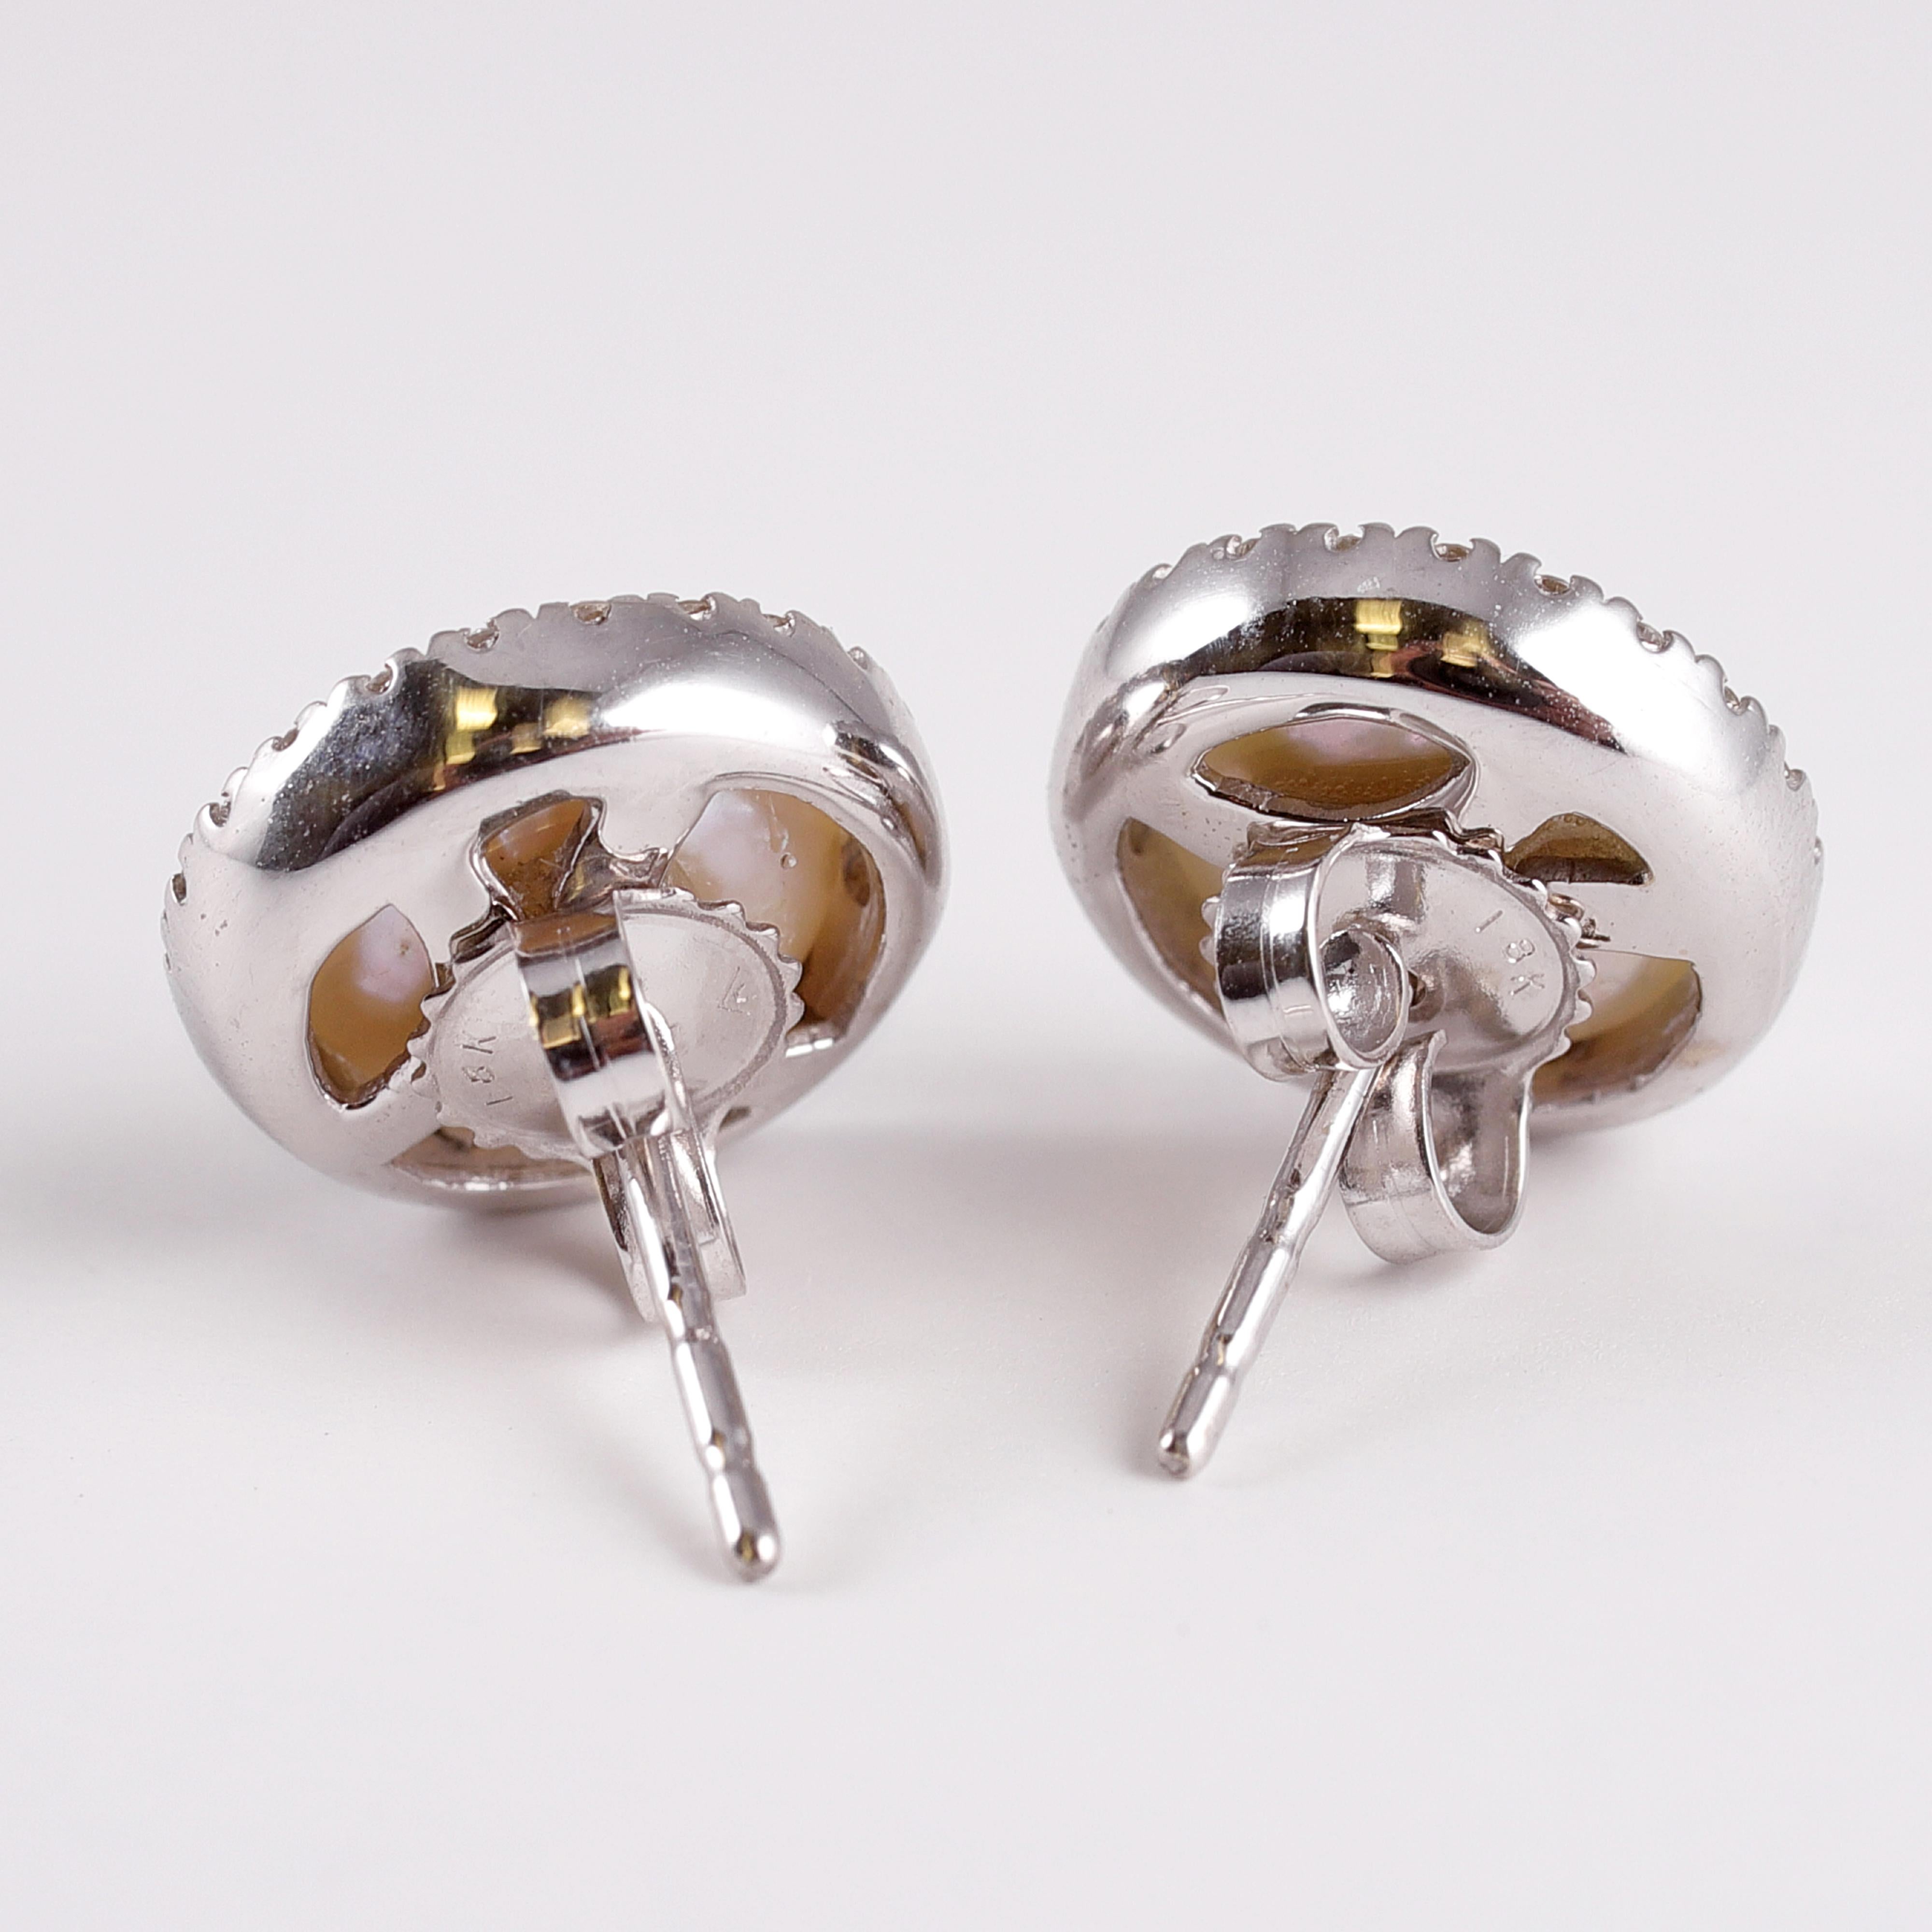 yvel pearl earrings